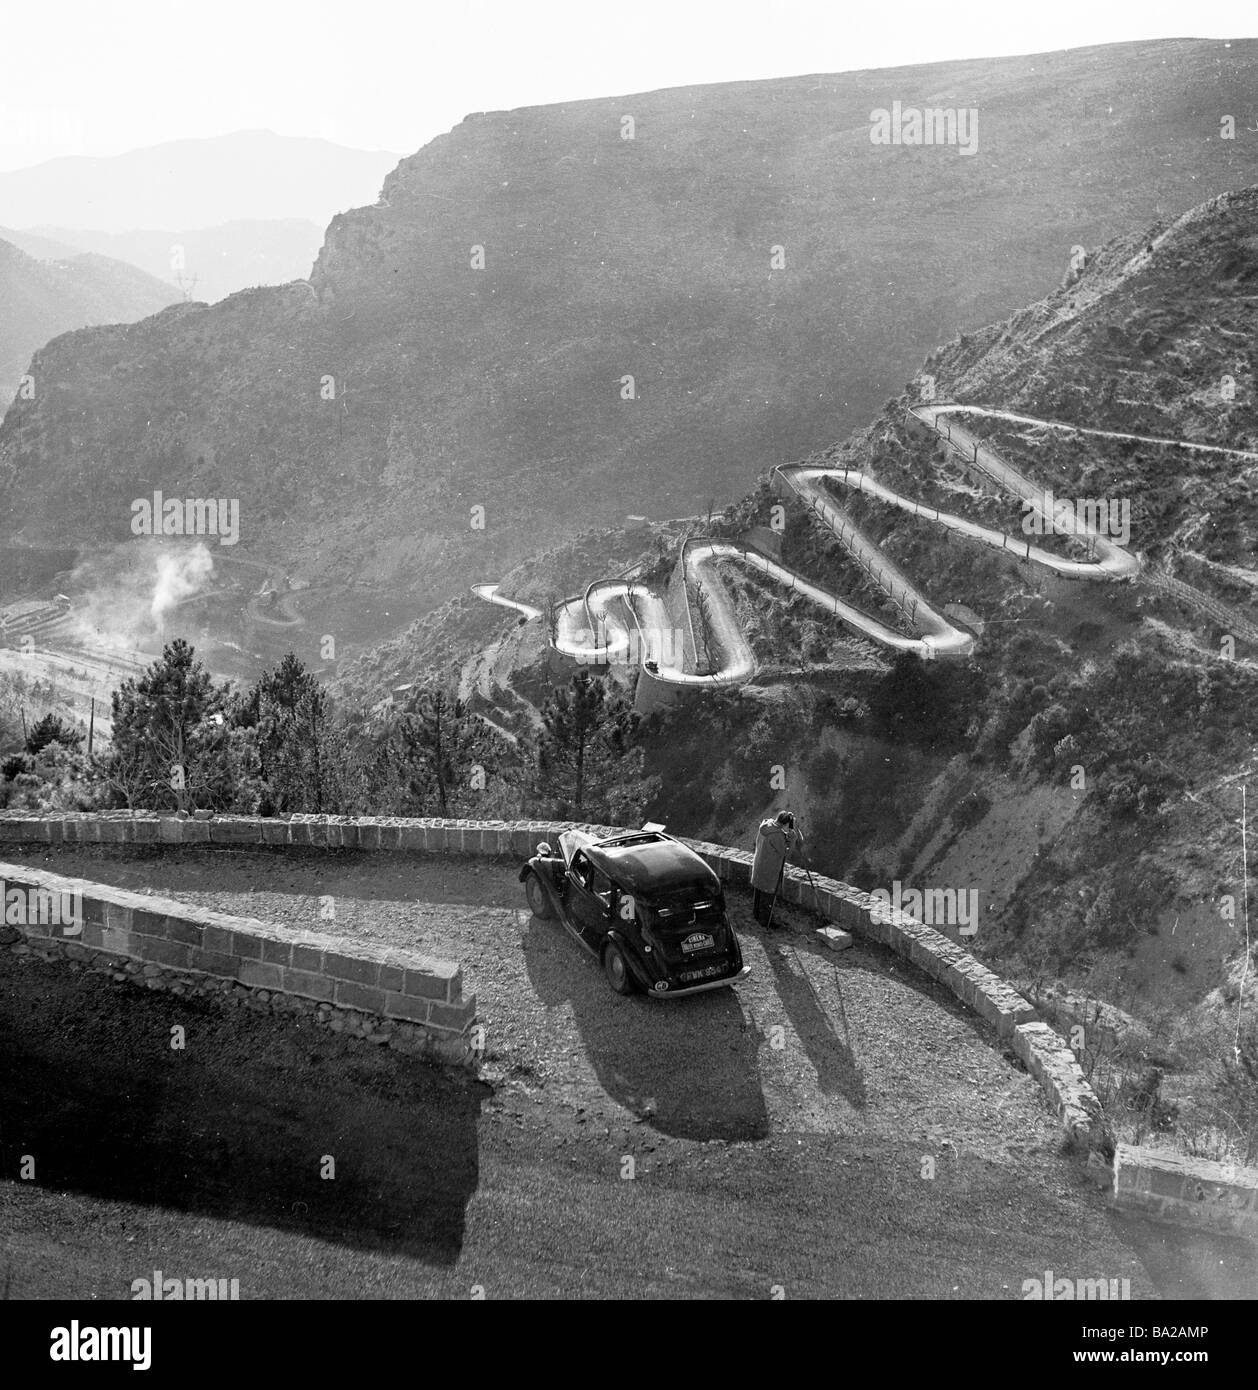 1952, historique, un caméraman de film prend des images du col de Braus, une route sinueuse dans les Alpes, en France, qui fait partie du Rallye Monte-Carlo. Banque D'Images